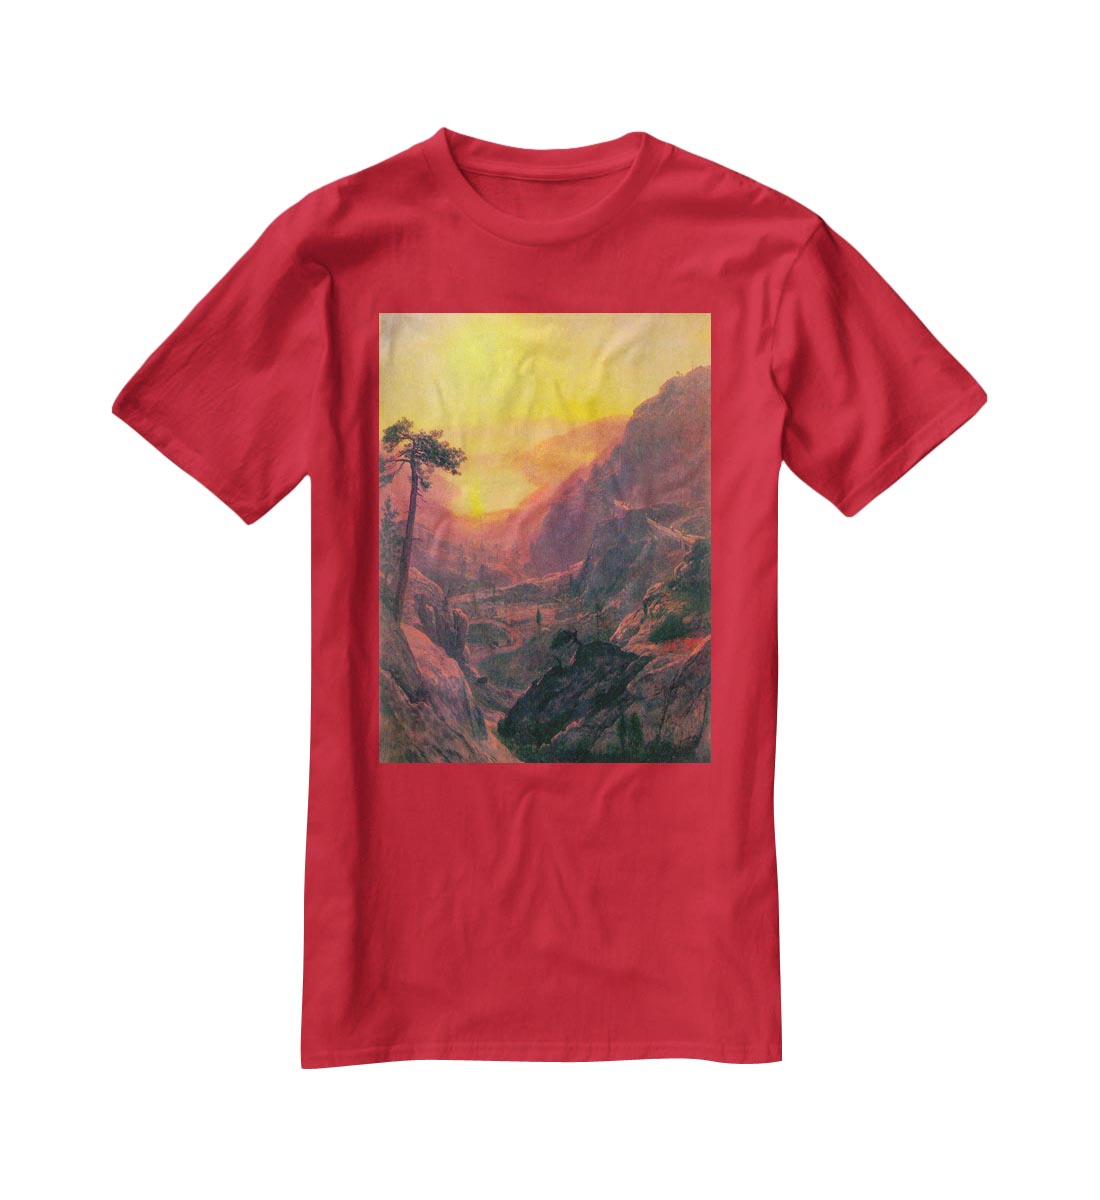 Donner Lake by Bierstadt T-Shirt - Canvas Art Rocks - 4